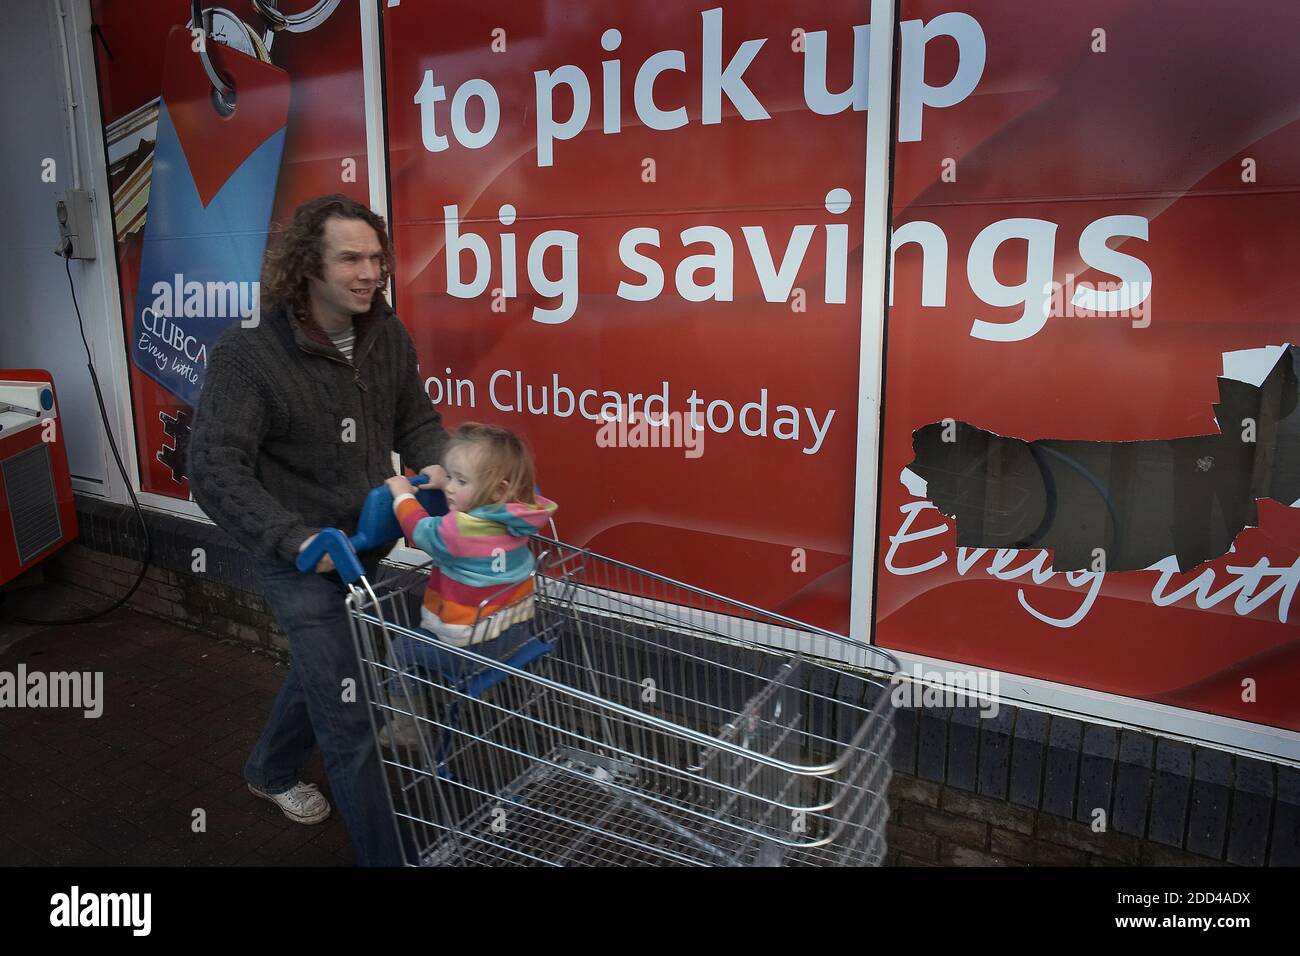 GRAN BRETAGNA / Inghilterra/Bristol.UN uomo con un bambino seduto in un carrello per lo shopping cammina oltre un cartello del supermercato Tesco. Foto Stock